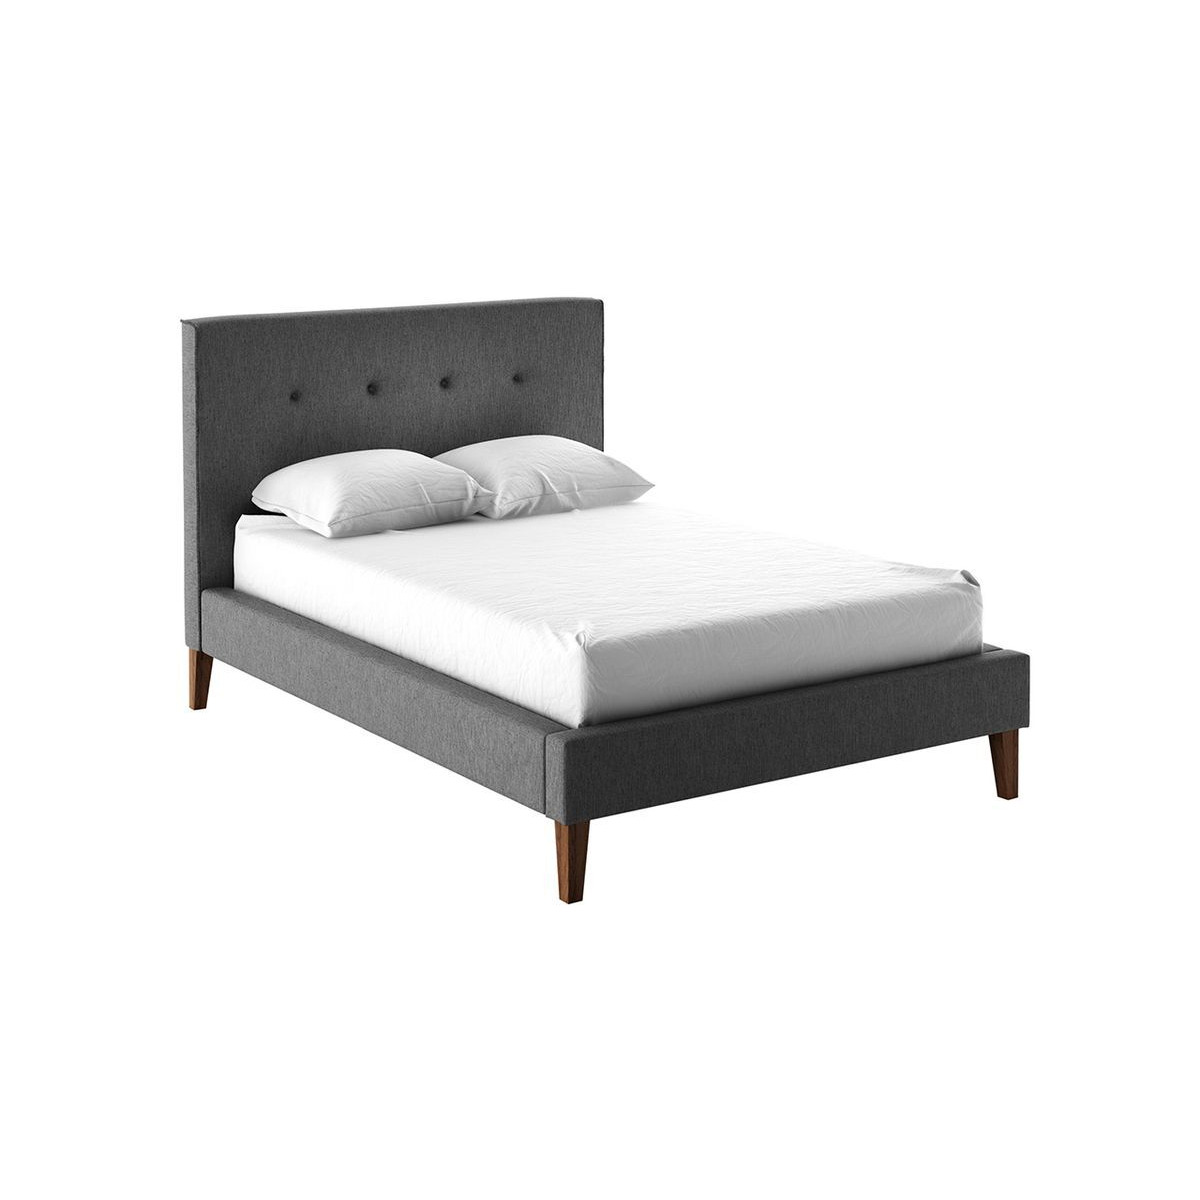 Inspire Upholstered Bed Frame, dark grey - image 1